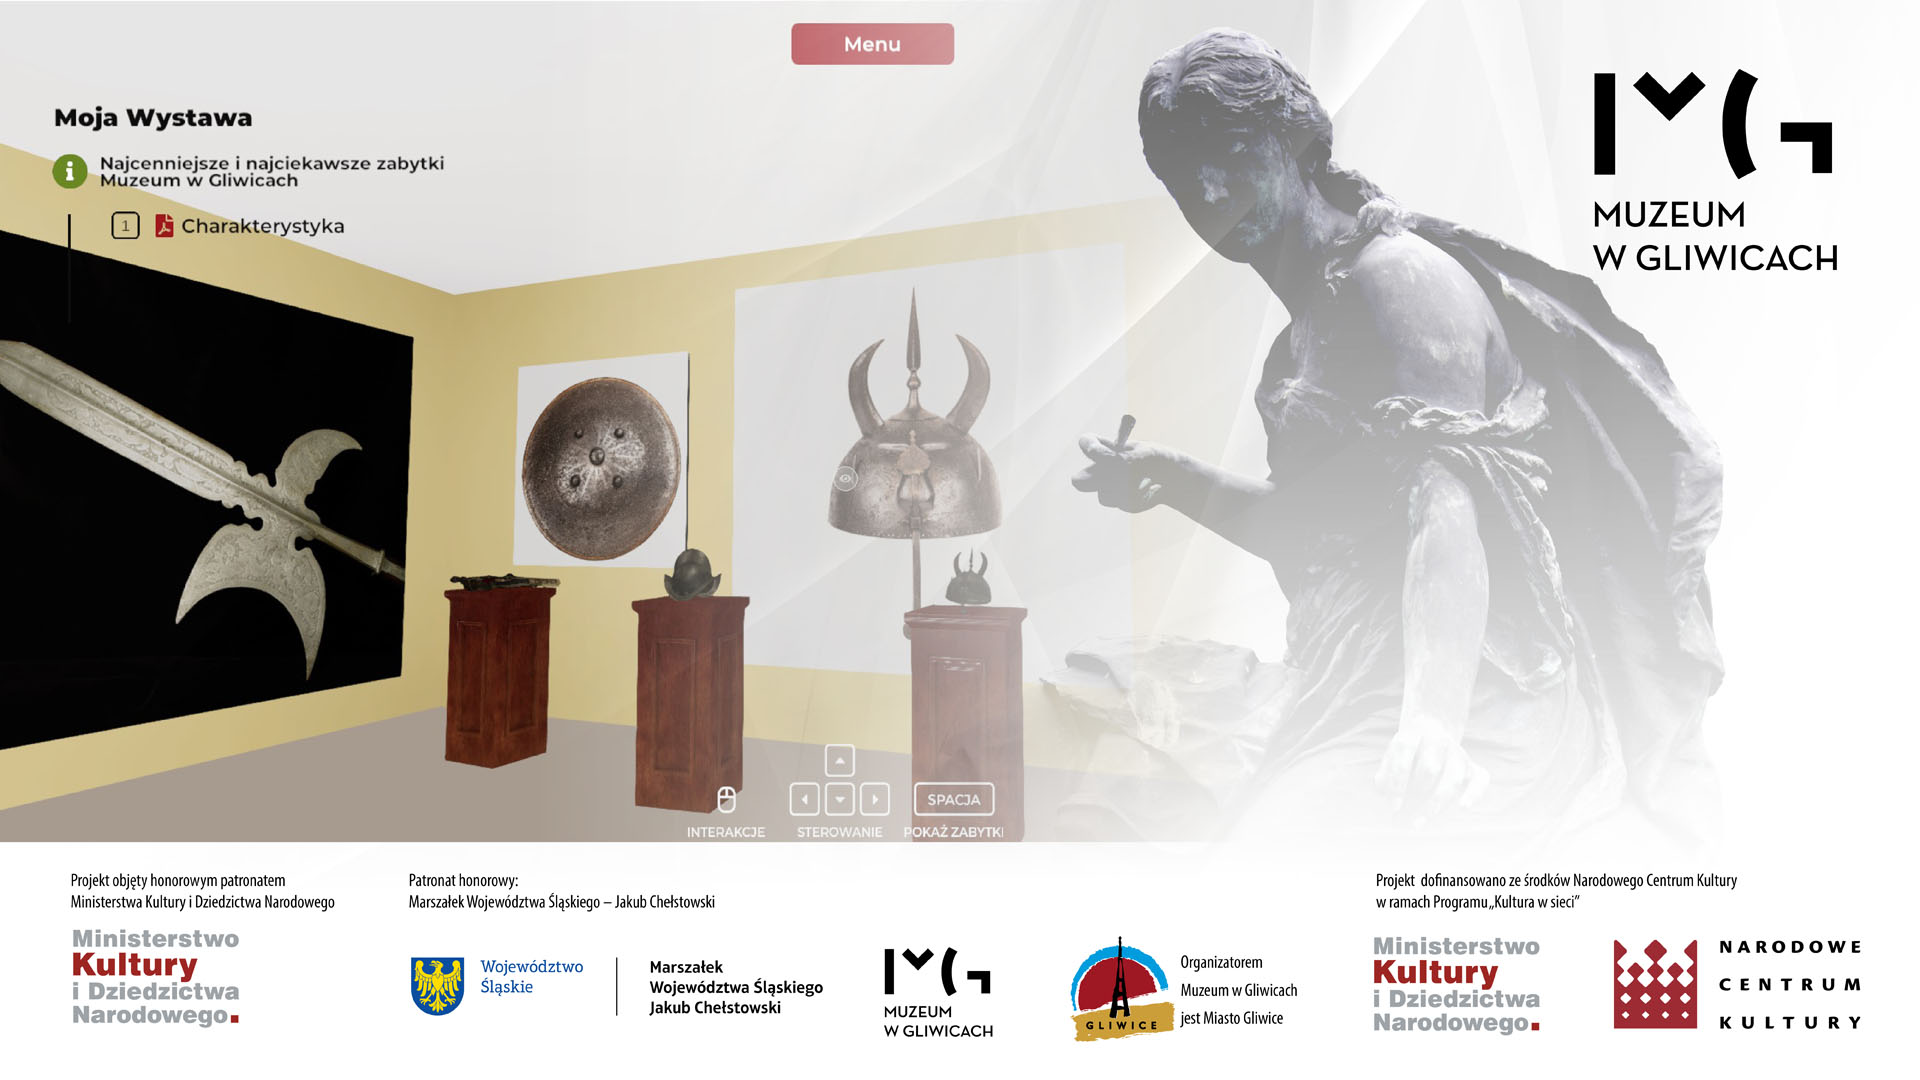 Inauguracja projektu „Wirtualnych wystaw wiele... w Muzeum w Gliwicach” – coraz bliżej!